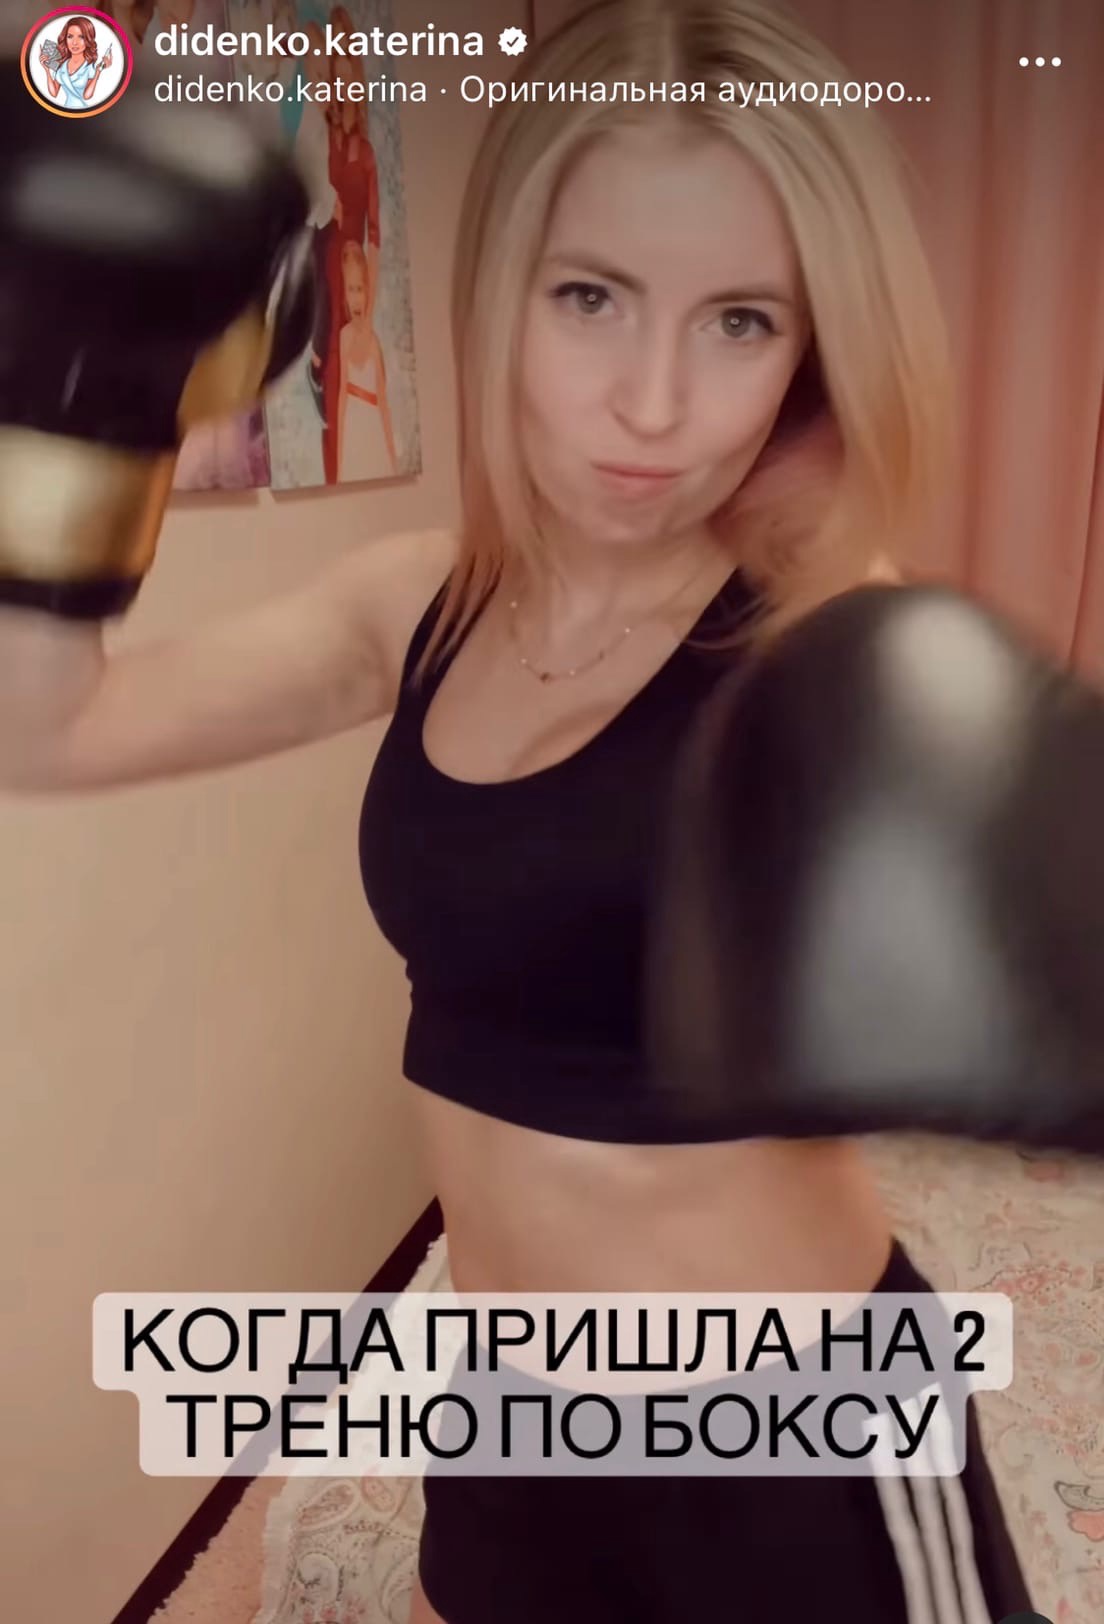 Дана Борисова узнала, с кем ей предстоит сразиться на ринге
